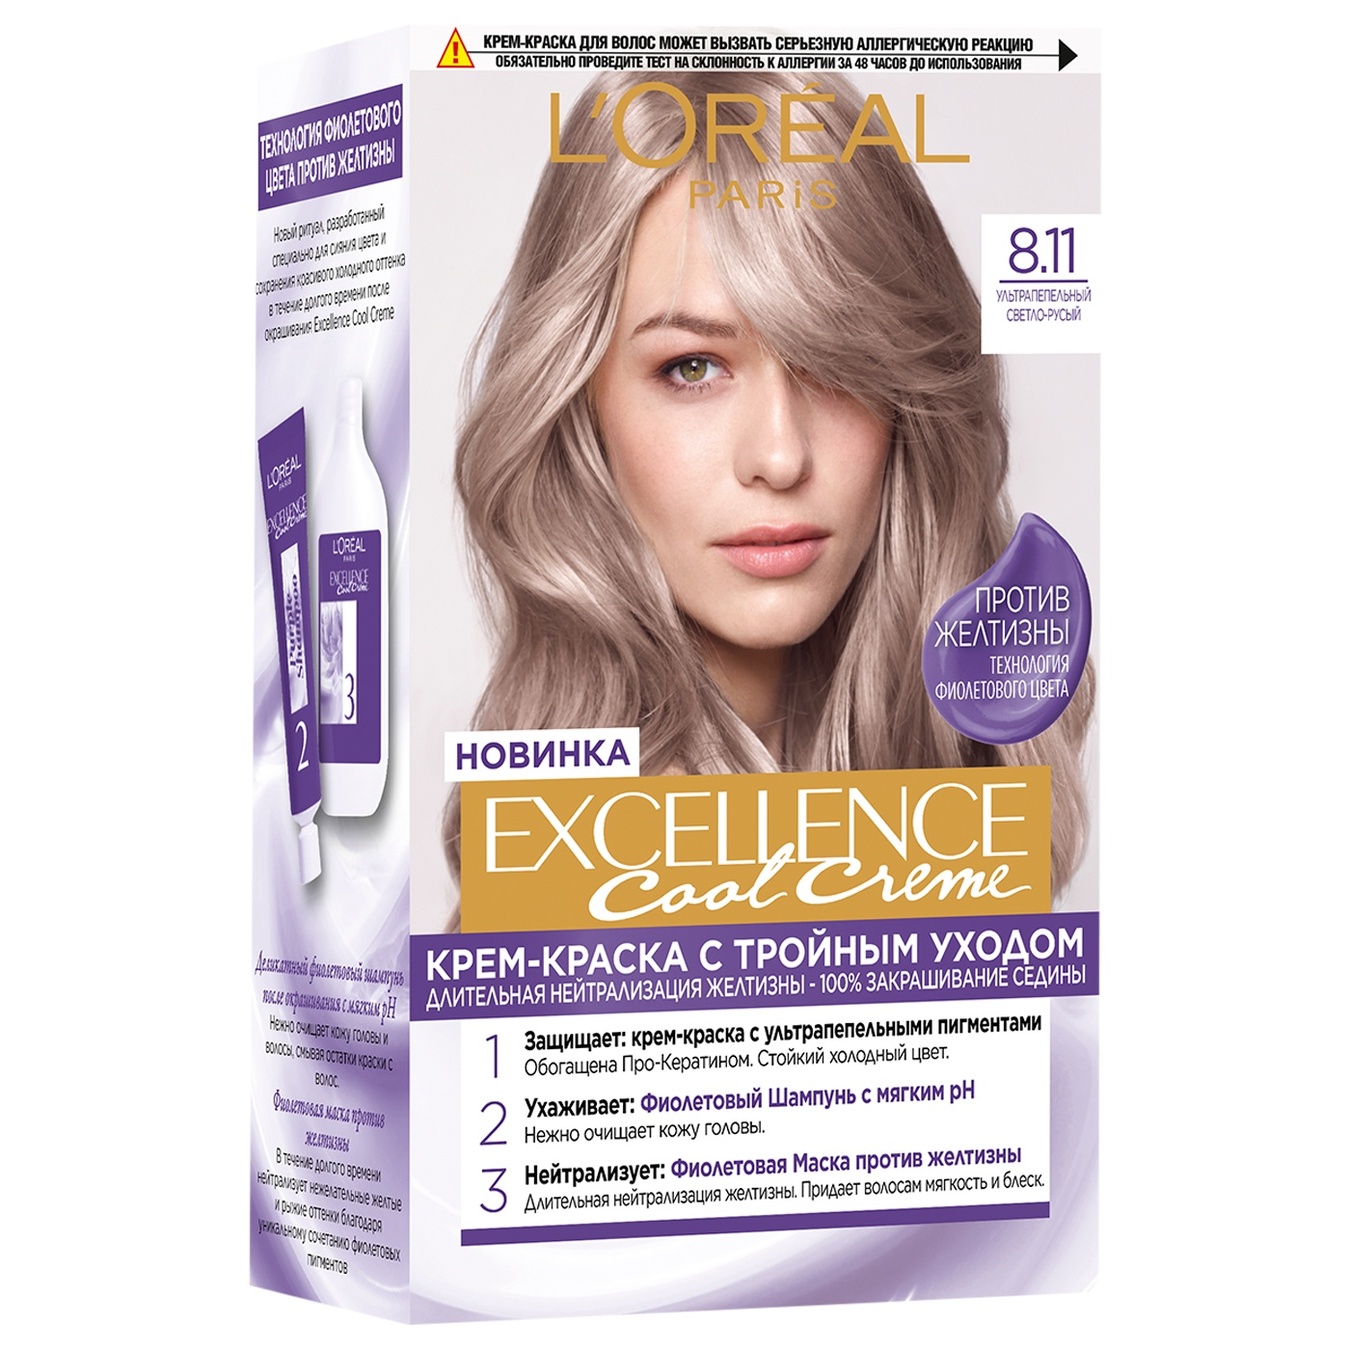 Крем-краска стойкая для волос Excellence Cool Creme L'Oreal 8.11